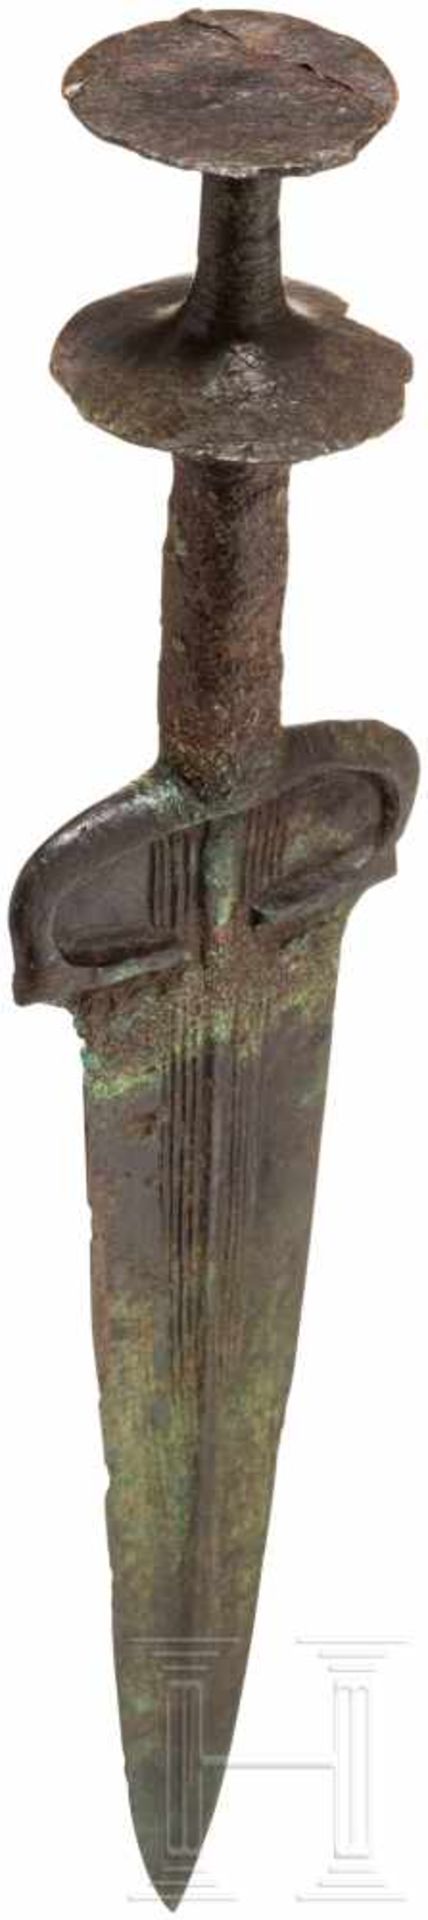 Bronzedolch mit Scheibenknauf, Nordiran - Luristan, um 1000 v. Chr.Klinge und Griff separat - Bild 3 aus 4